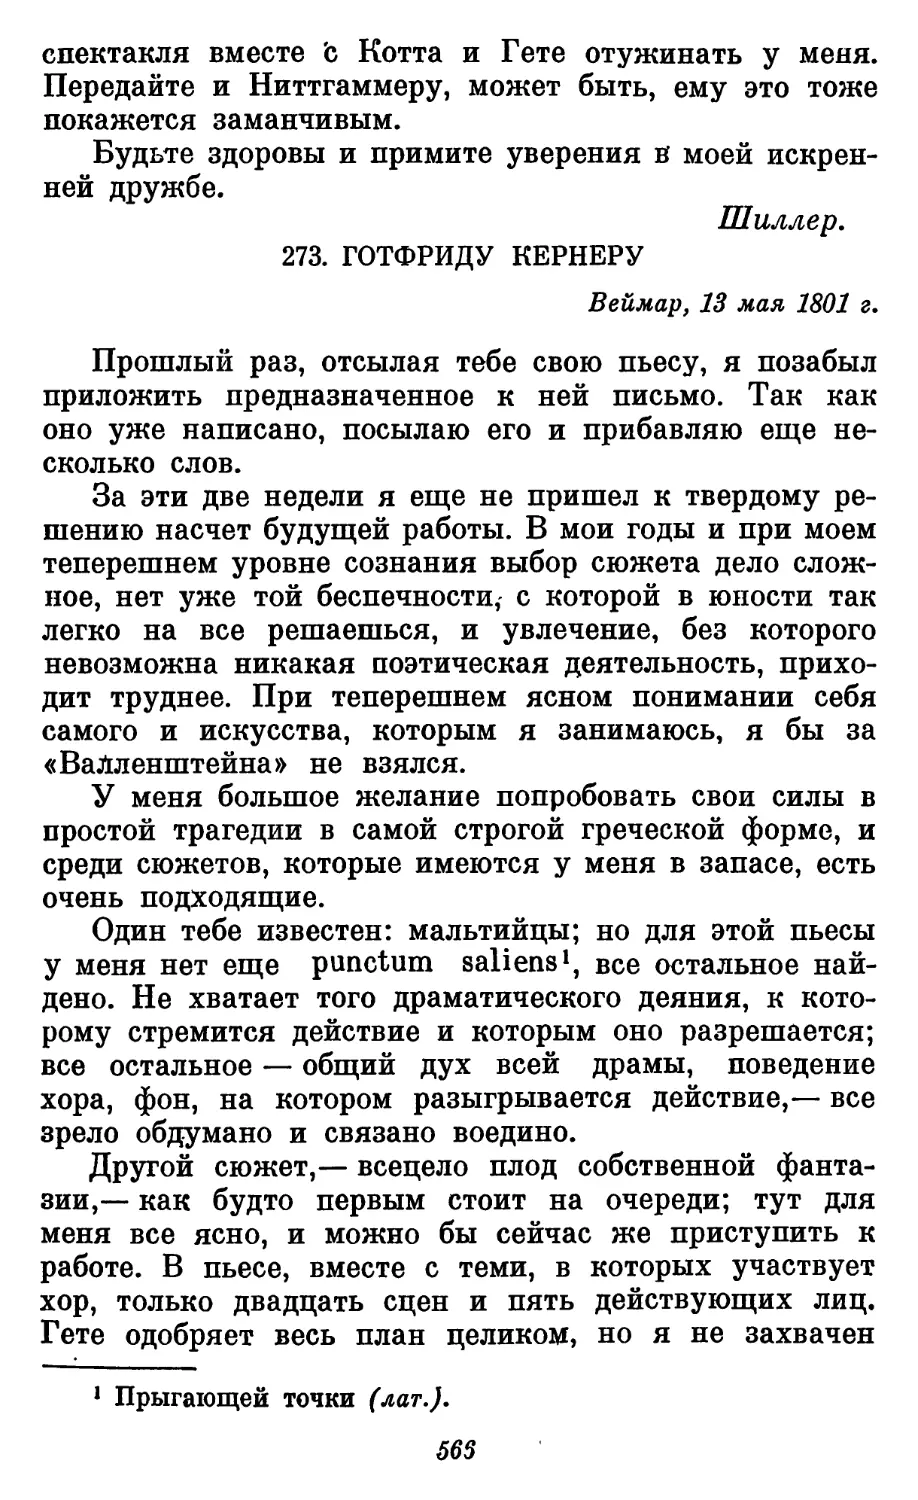 273. Готфриду Кернеру, 13 мая 1801 г